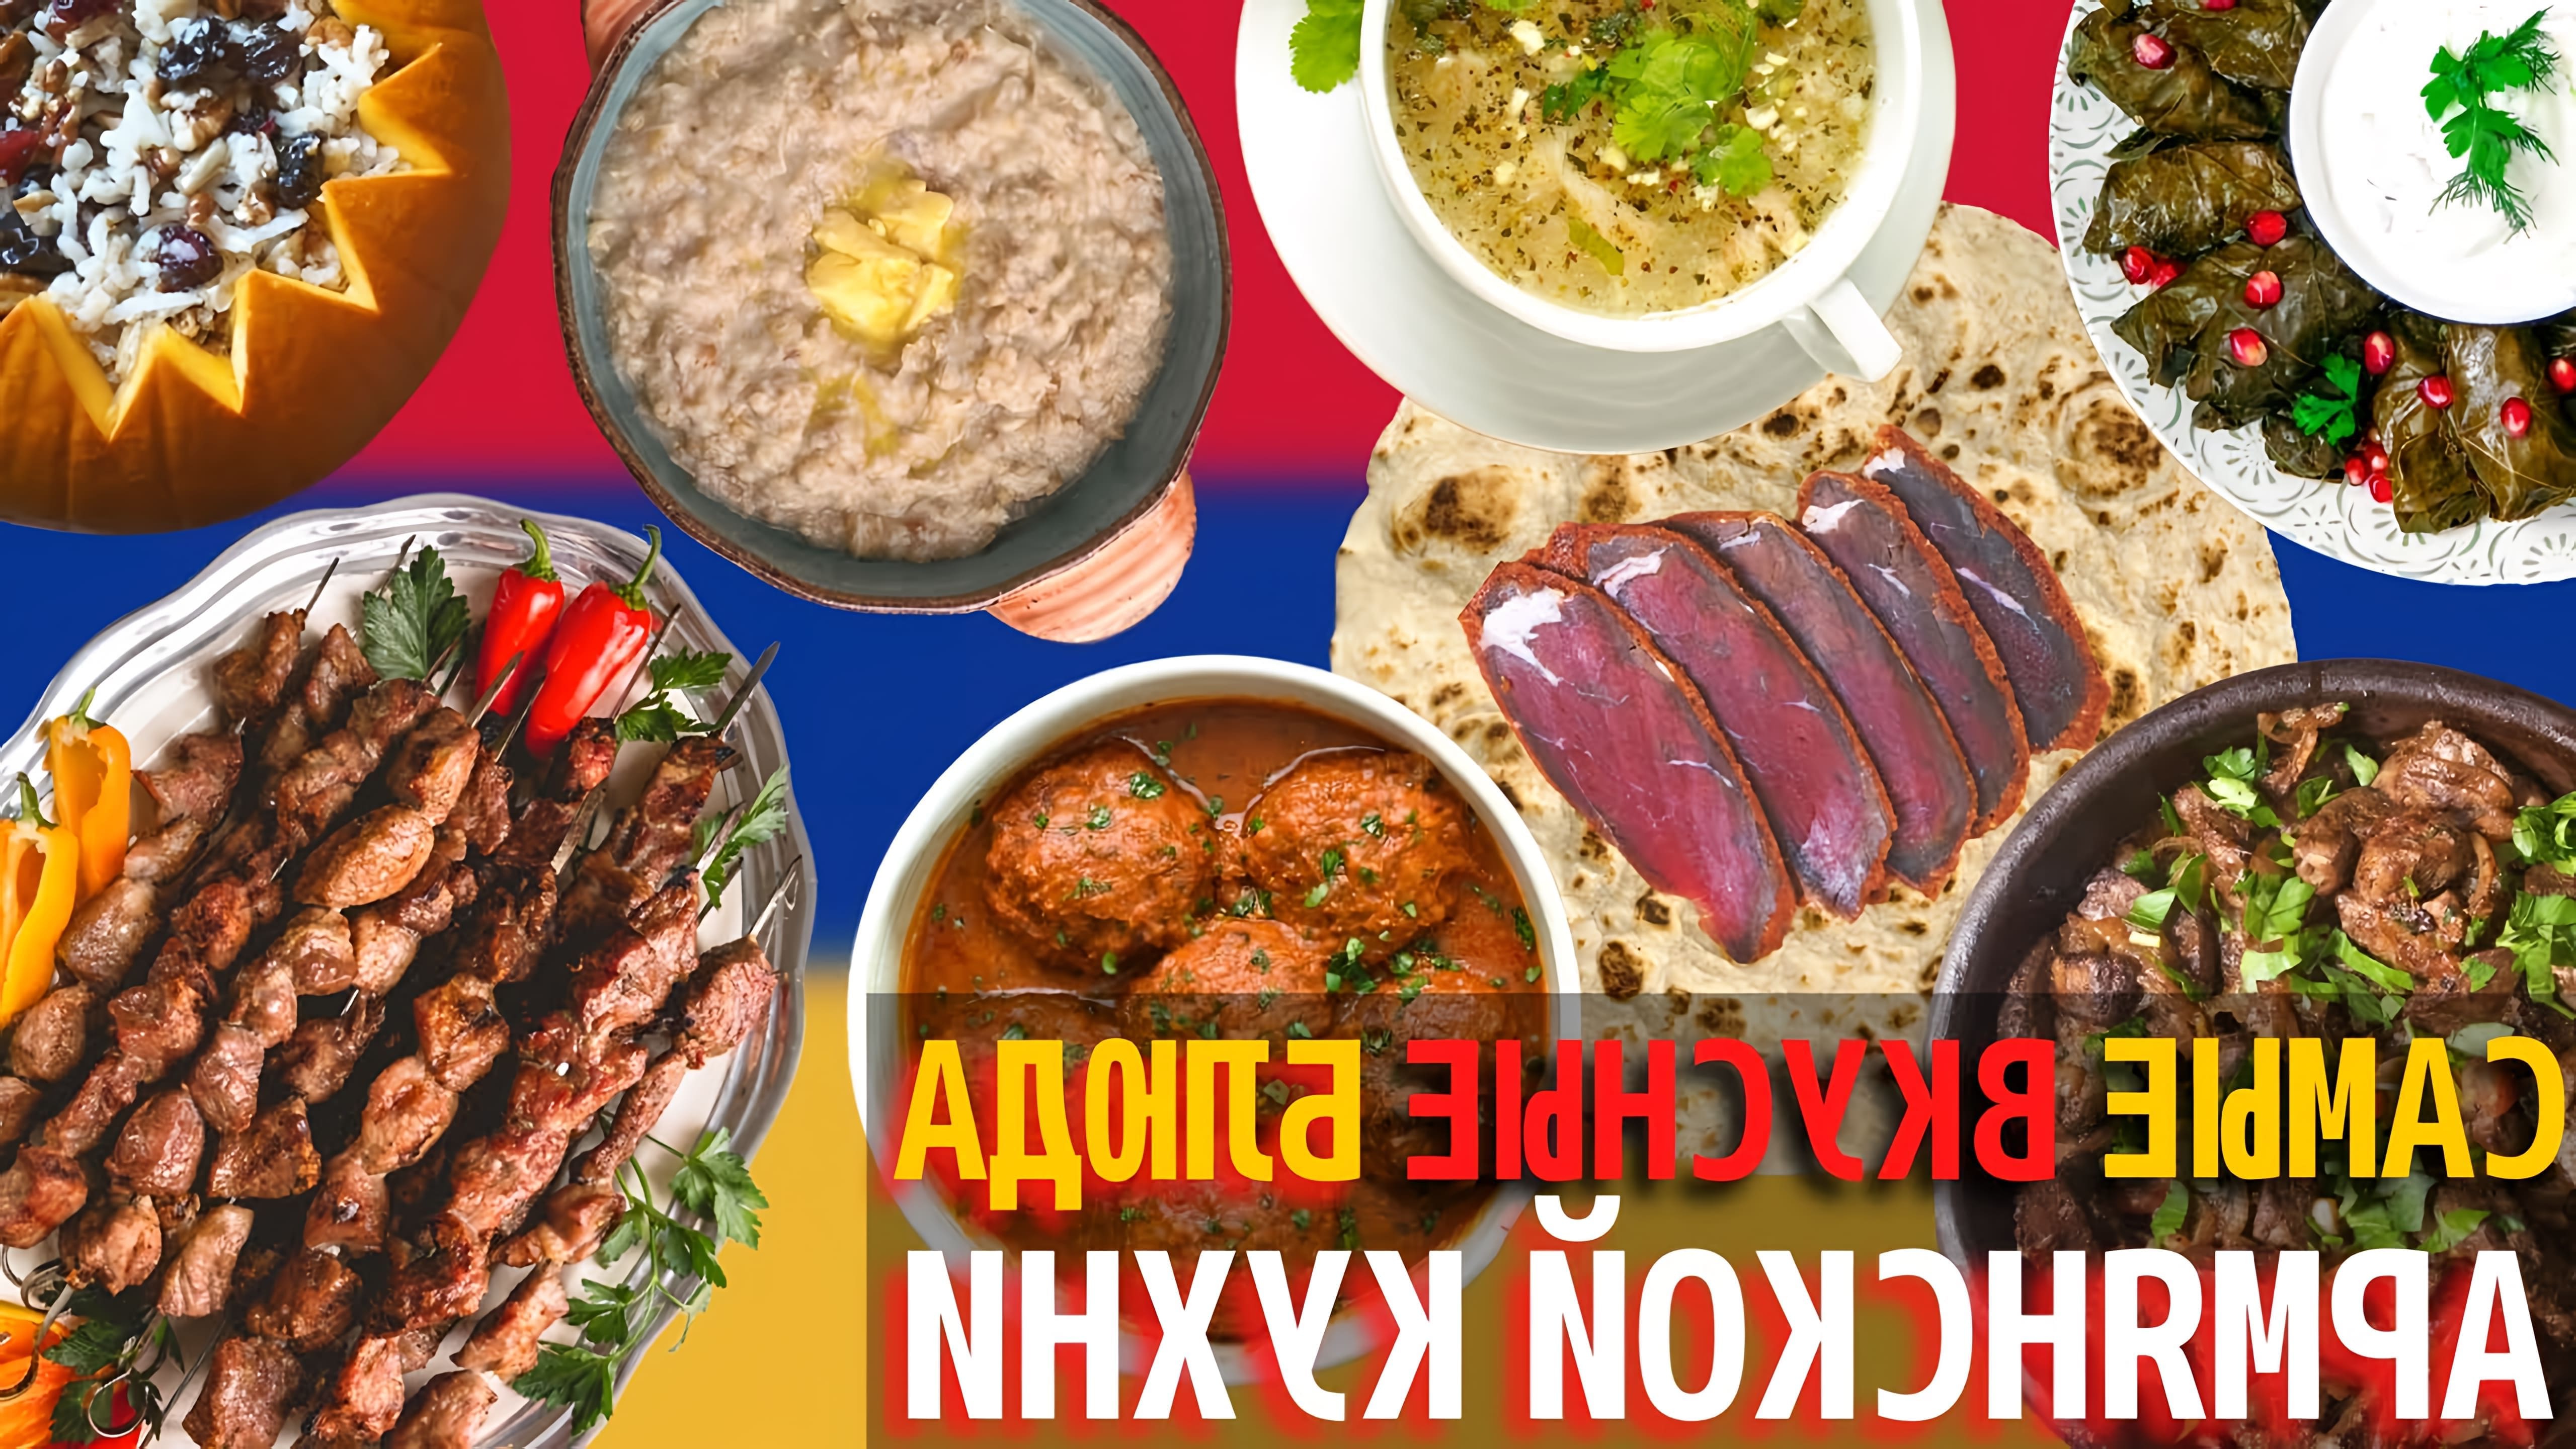 Армянская кухня - одна из старейших кулинарных культур Европы, известная своими вкусными блюдами